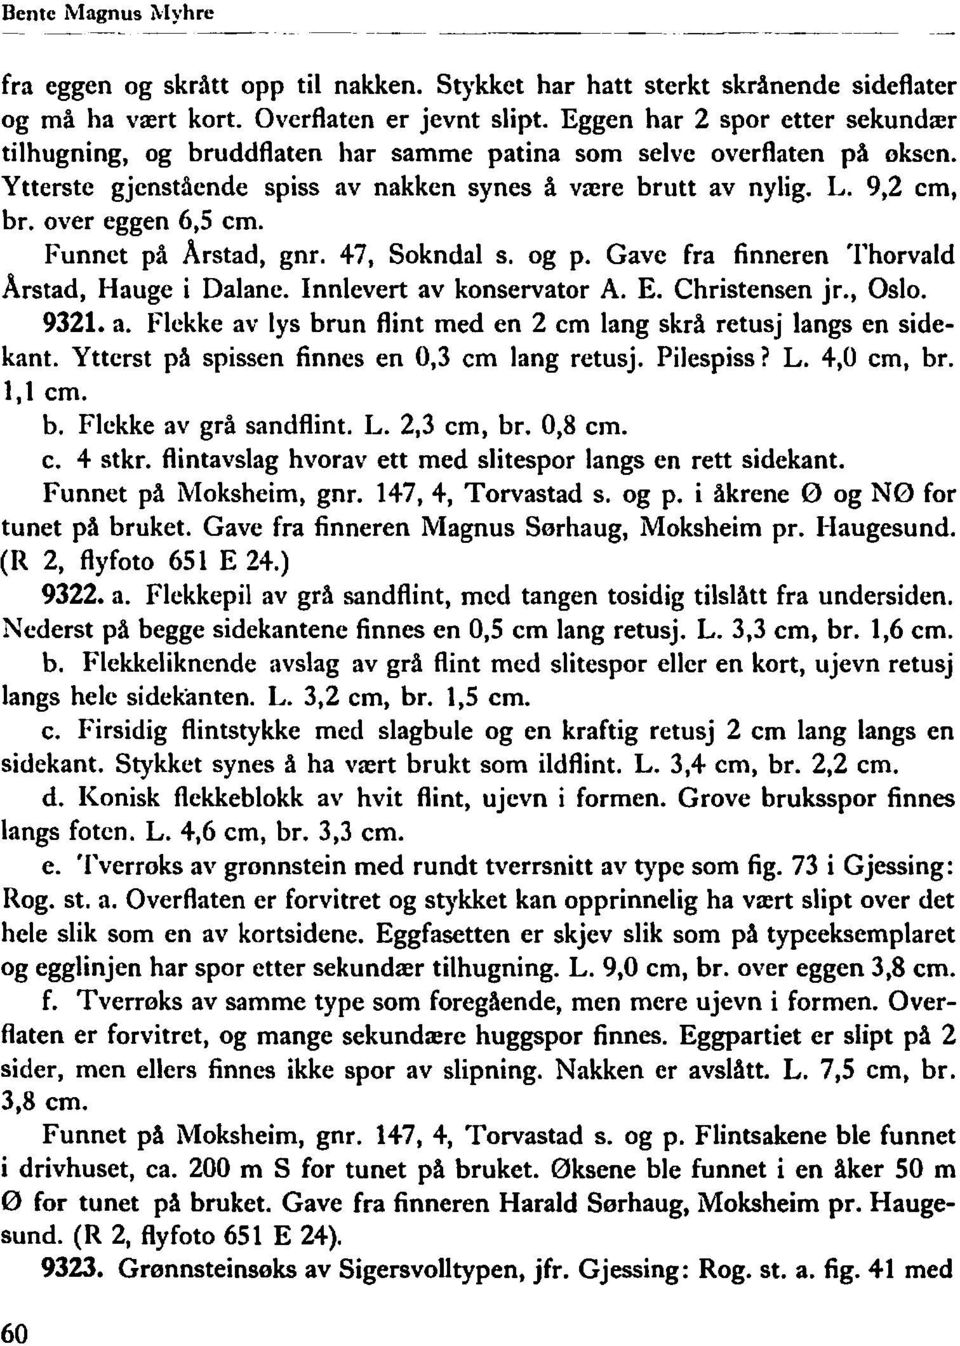 9,2 cm, bro over eggen 6,5 cm. Funnet på Arstad, gnr. 47, Sokndal s. og p. Gave fra finneren Thorvald Arstad, Hauge i Dalane. Innlevert av